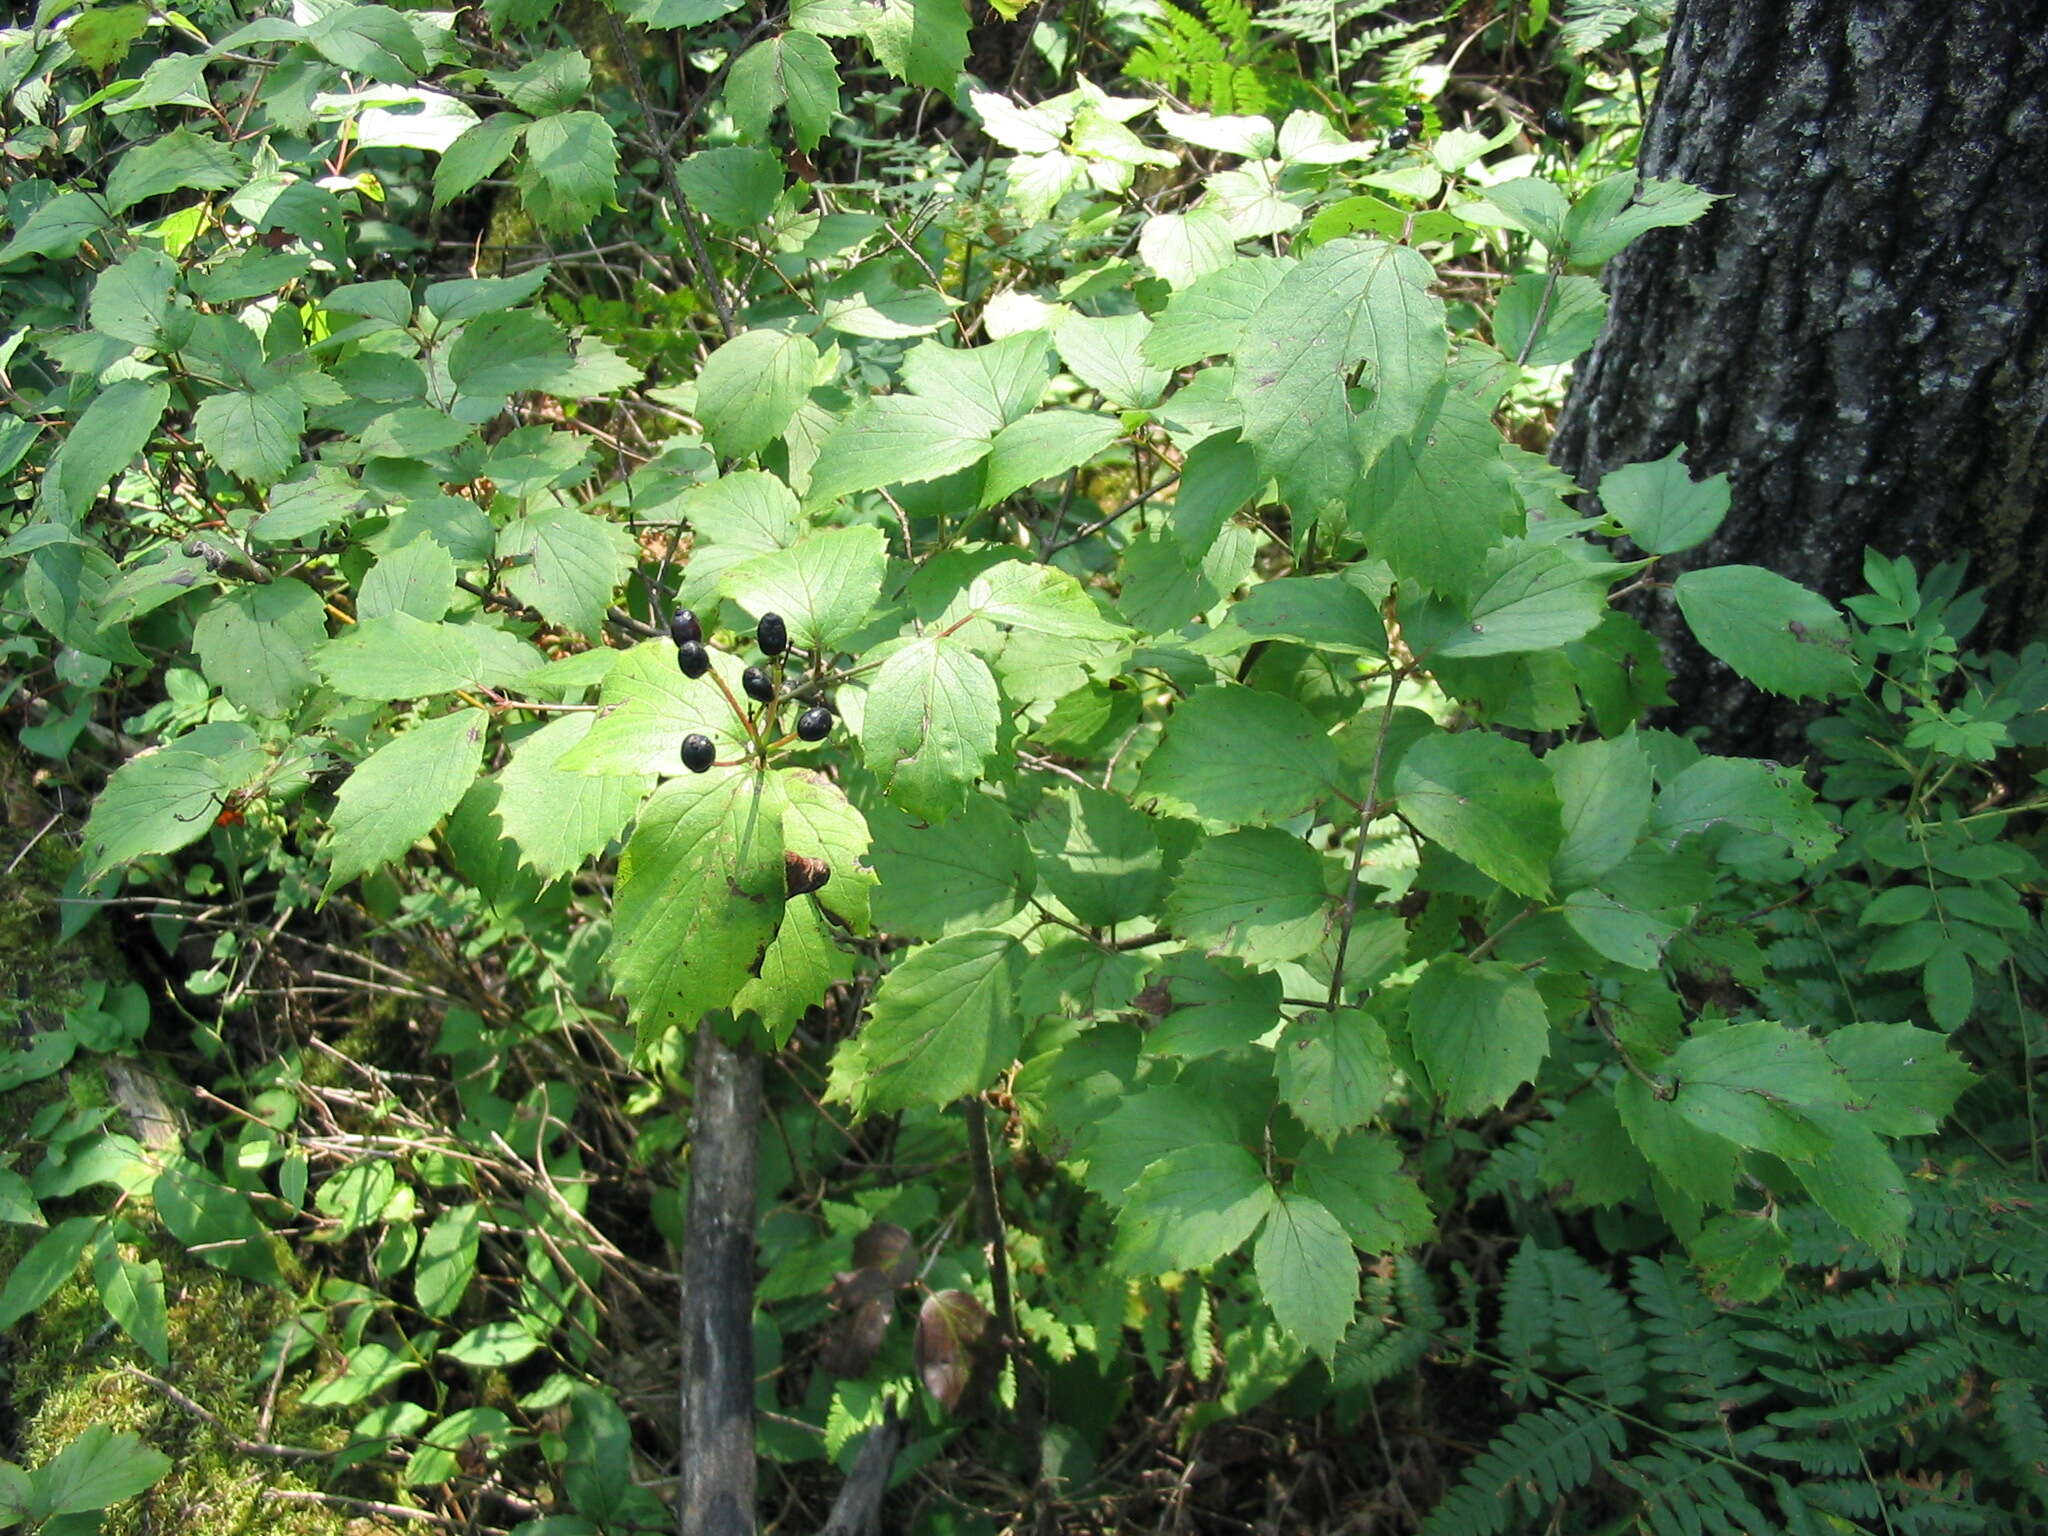 Image of Viburnum rafinesqueanum